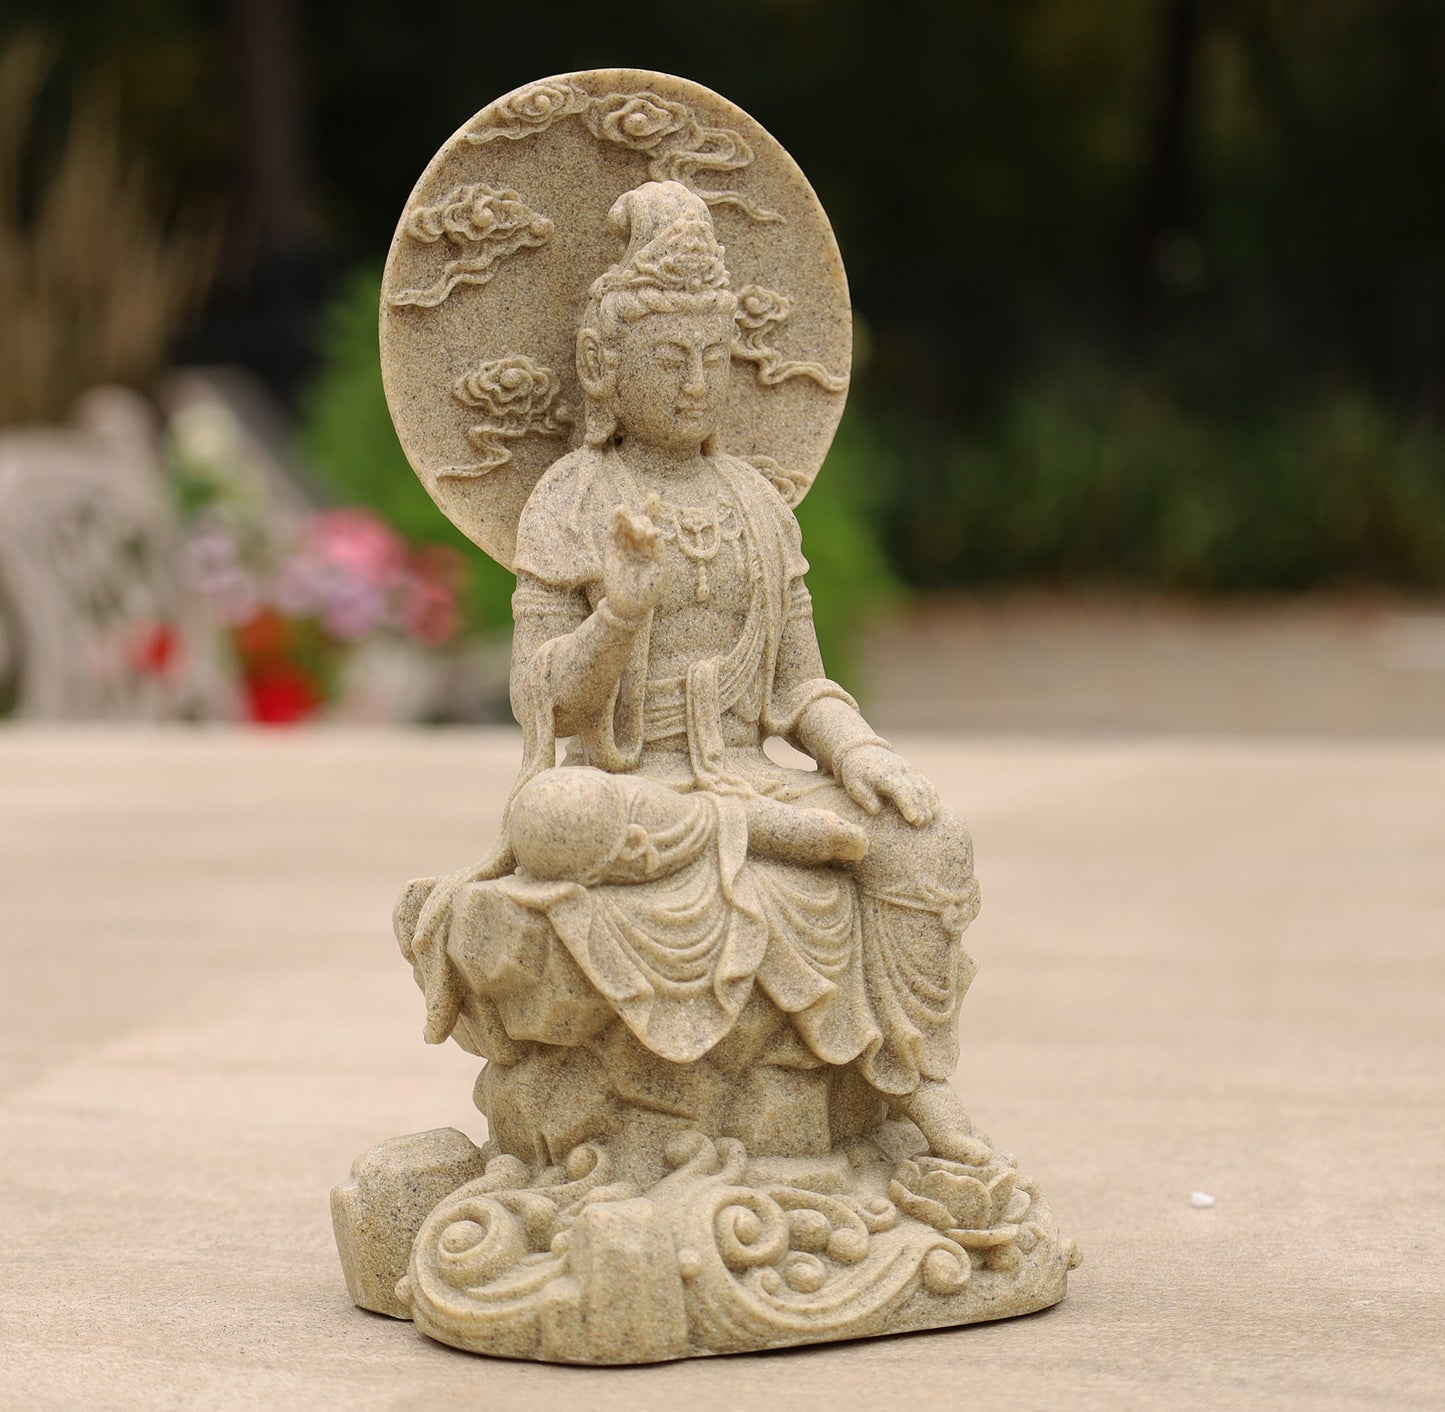 Kuan Yin Quan Yin Statue Female Buddha Blessing 8 Inches Tall